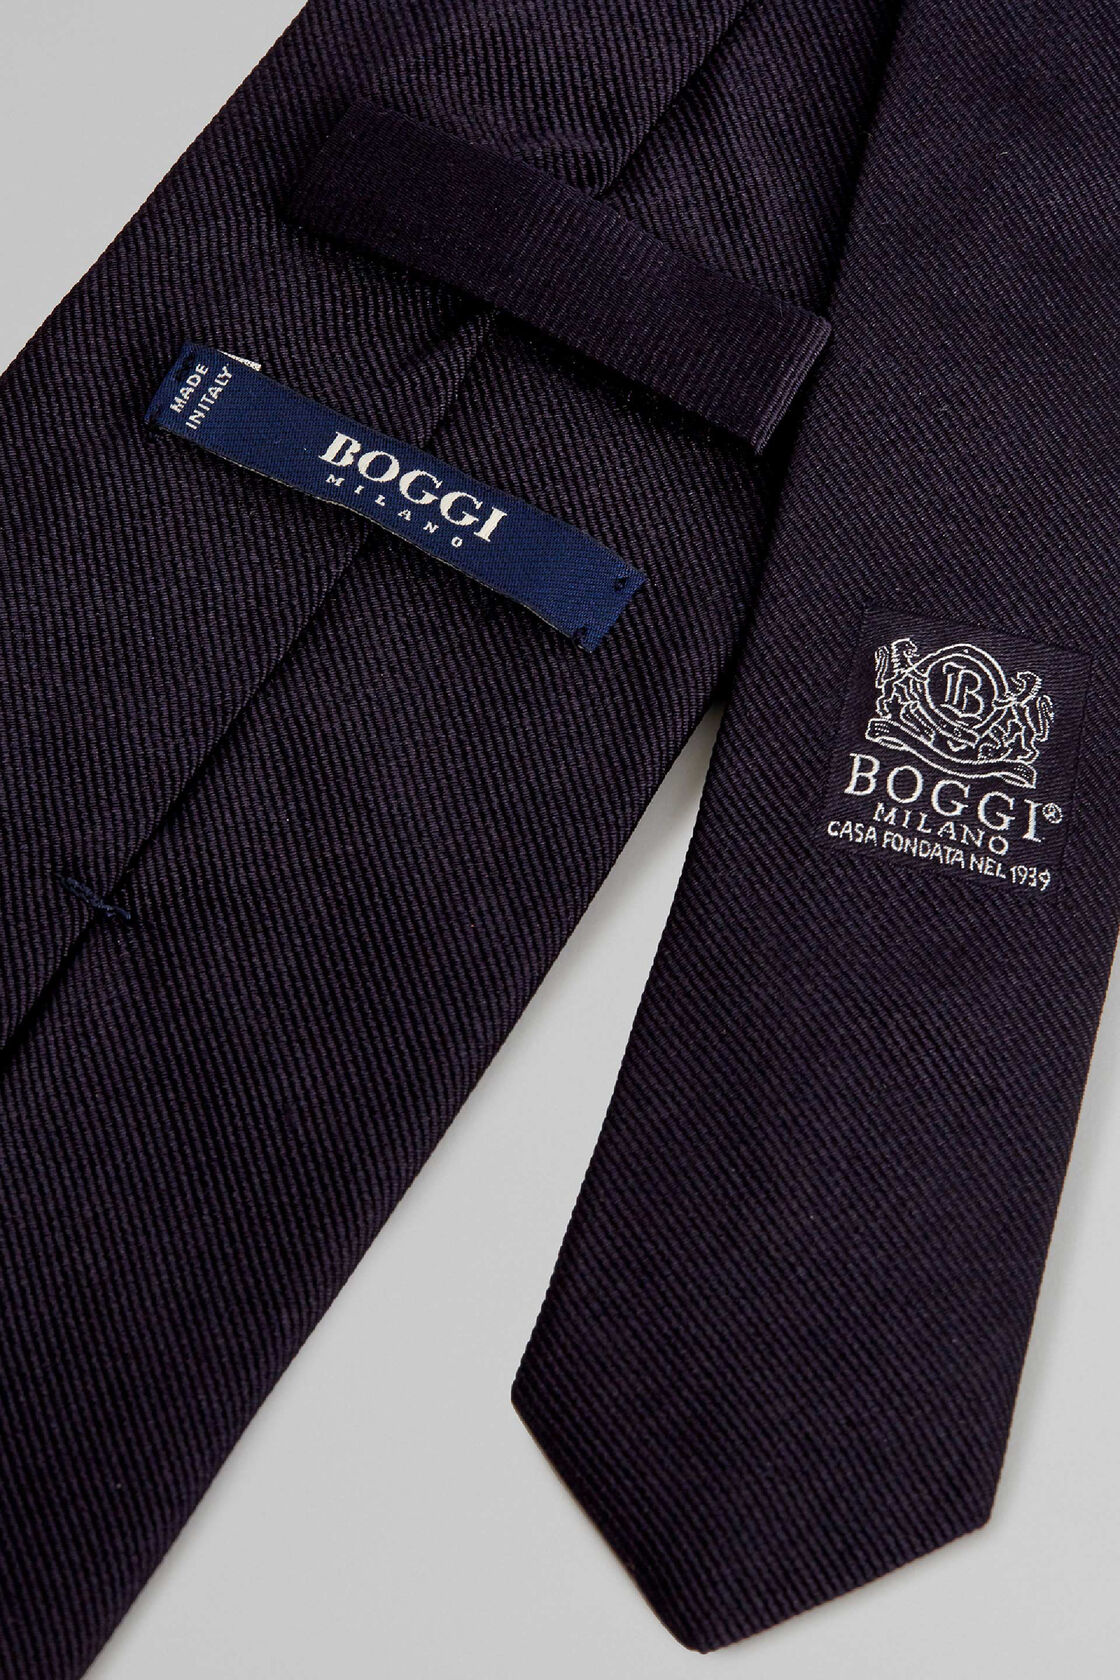 Worauf Sie bei der Auswahl von Boggi krawatte Acht geben sollten